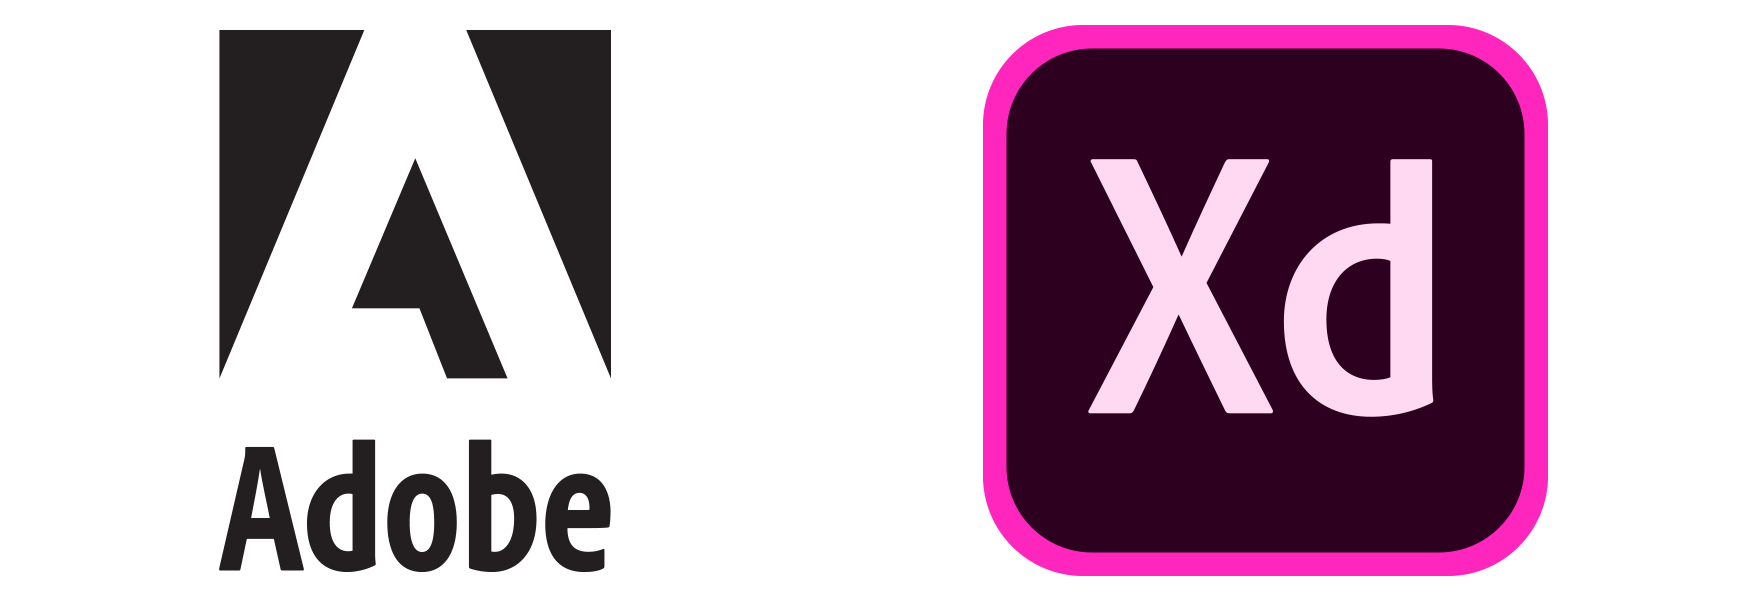 XD Logo - ADOBE XD • UX DAY